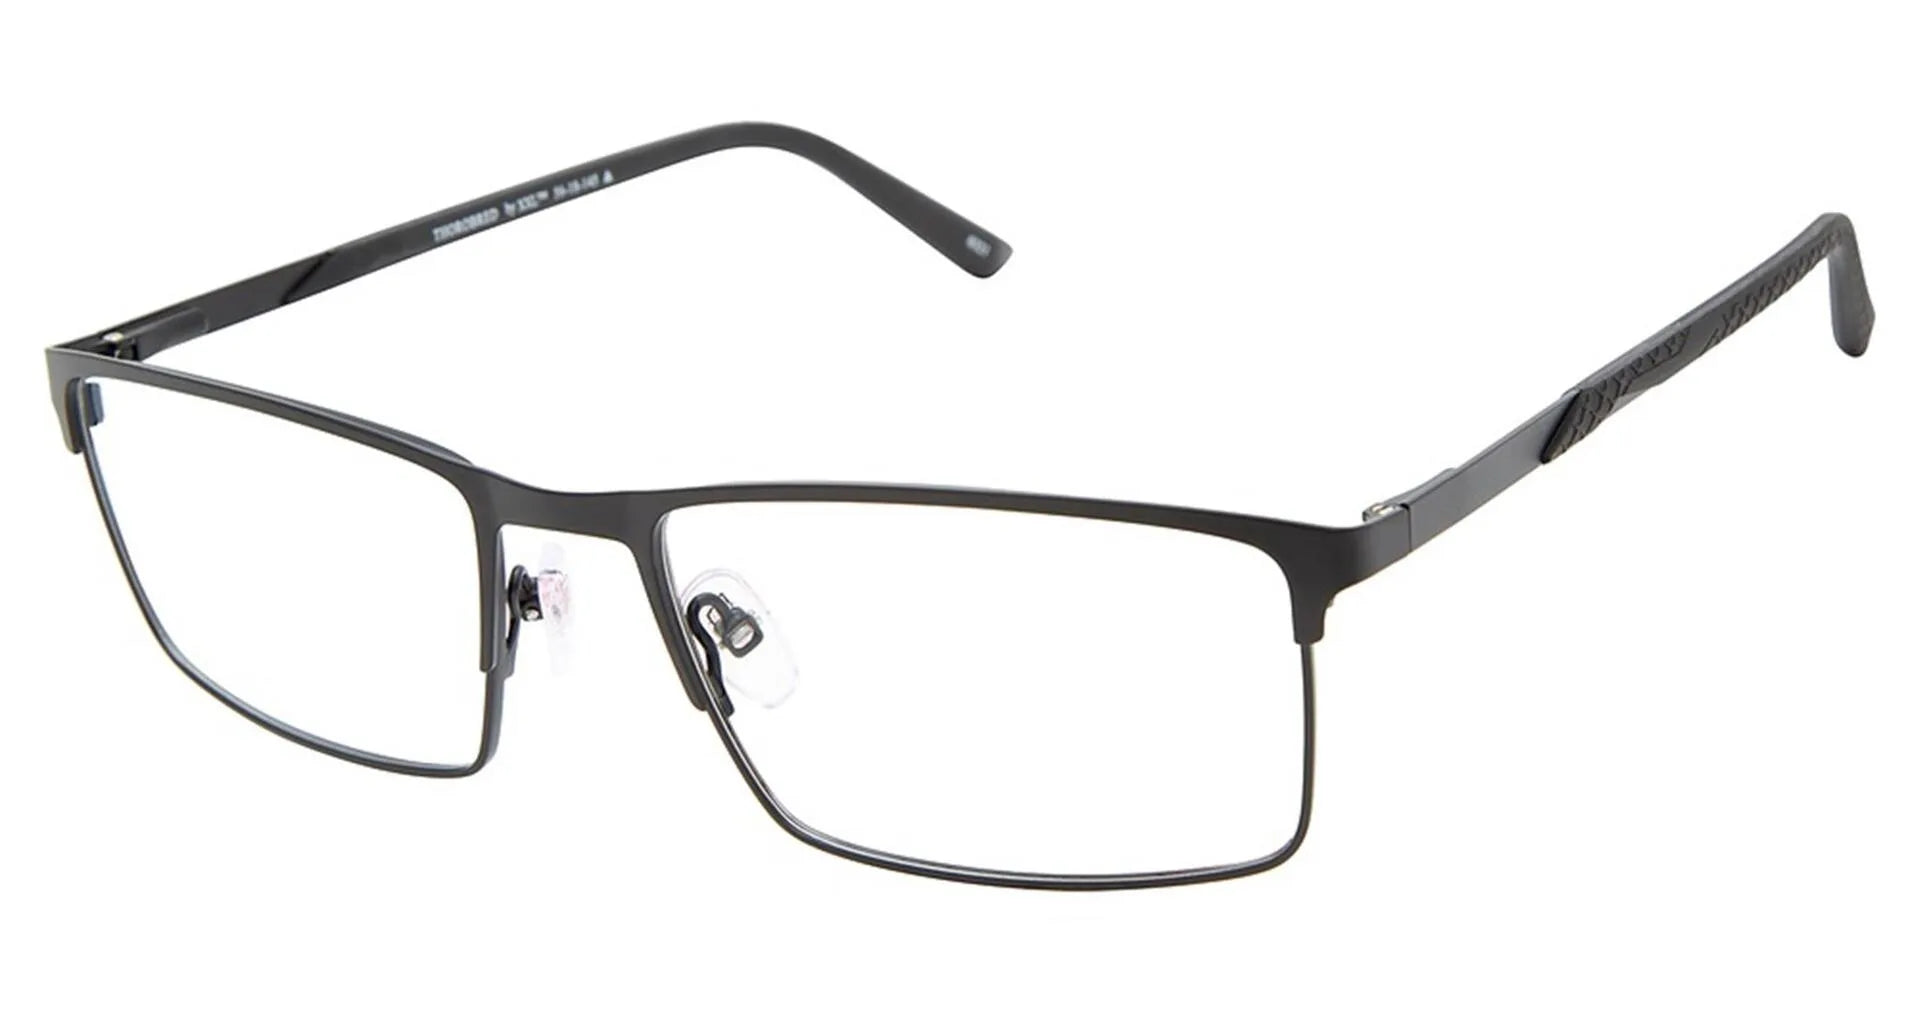 XXL Eyewear Thorobred Eyeglasses Black